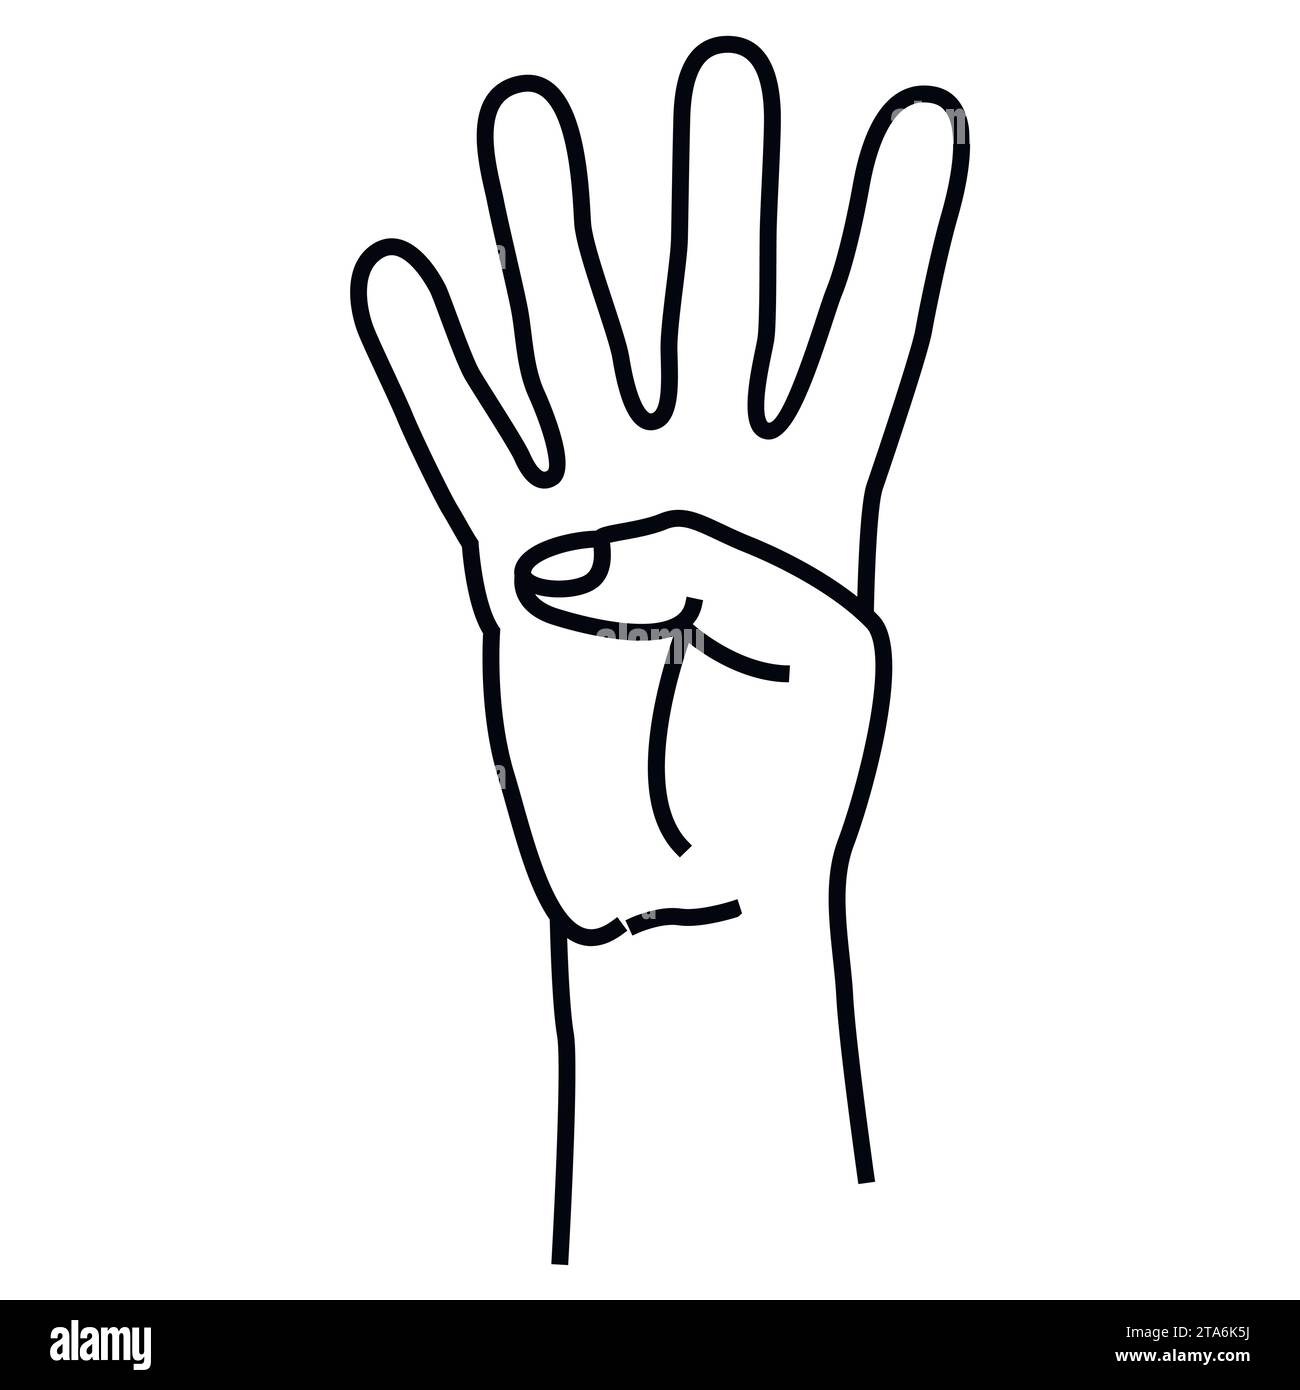 Vier-Finger-Geste in Linienform isoliert auf weißem Hintergrund. Vektorillustartion Stock Vektor